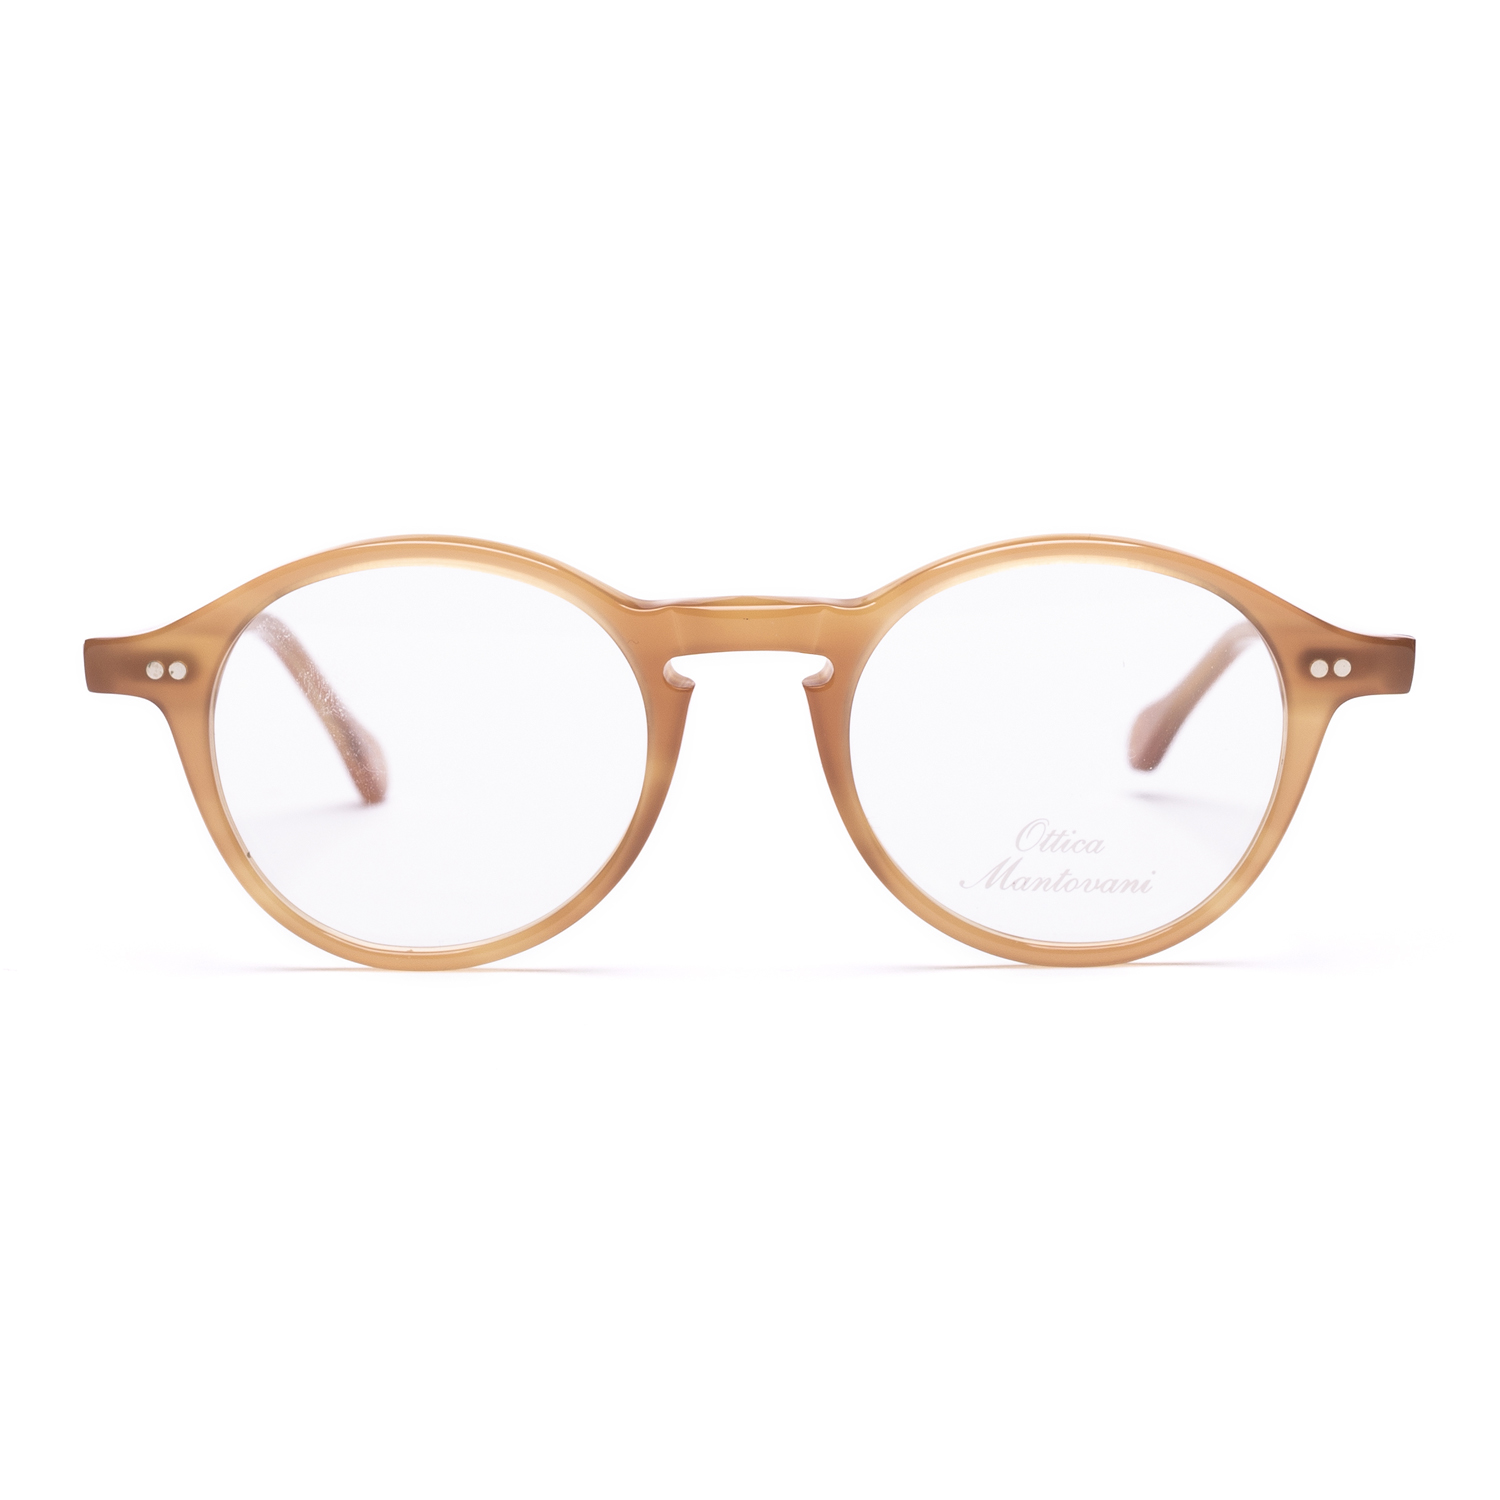 Modello FRANCIS un occhiale elegante della collezione Ottica Mantovani. 

👓 Ottica Mantovani Venezia dal 1871, occhiali d’autore per donna e uomo.

ℹ️ Visita il nostro sito per vedere tutta la nostra produzione www.otticamantovani.it

📞 Chiamaci per informazioni +39 0415223427

#sunglasses #otticamantovani #otticamantovanivenezia #lunettes #brillen #brillenstyling #ottica #designedinvenice #glasses #madeinitaly  #eyeglasses #eyewear  #eyewearfashion #optical #eyes #vision #occhiali #optometry  #stylish #design #occhialidavista #uniqueeyewear #eye #opticalshop #ophthalmology #eyewearstyle #cool #glassesstyle #sunglass